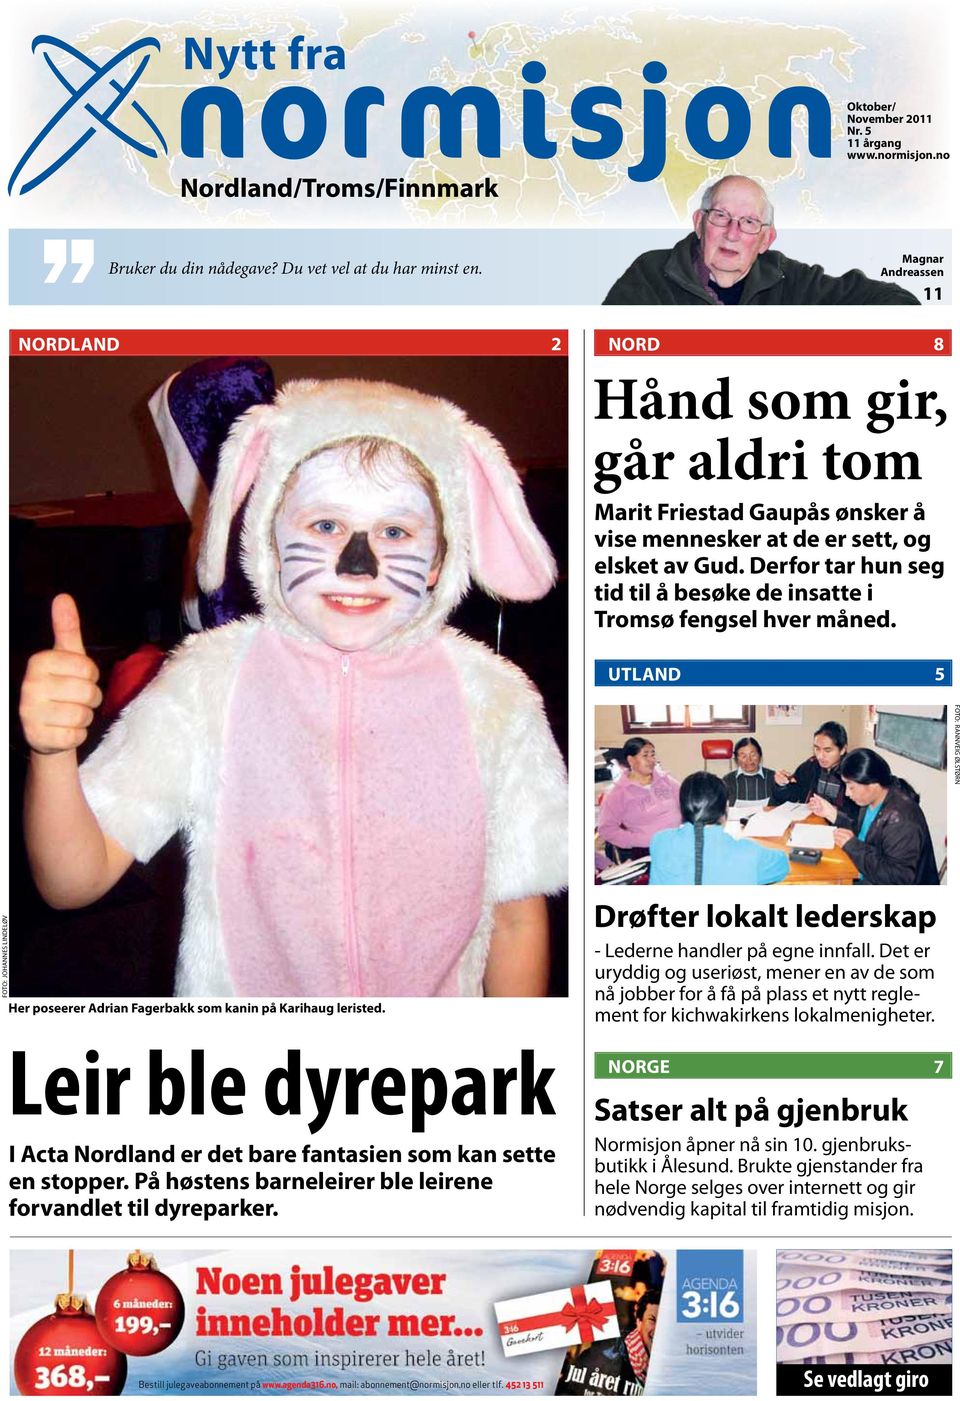 Derfor tar hun seg tid til å besøke de insatte i Tromsø fengsel hver måned. utland 5 rannveig ølstørn Johannes Lindeløv Her poseerer Adrian Fagerbakk som kanin på Karihaug leristed.